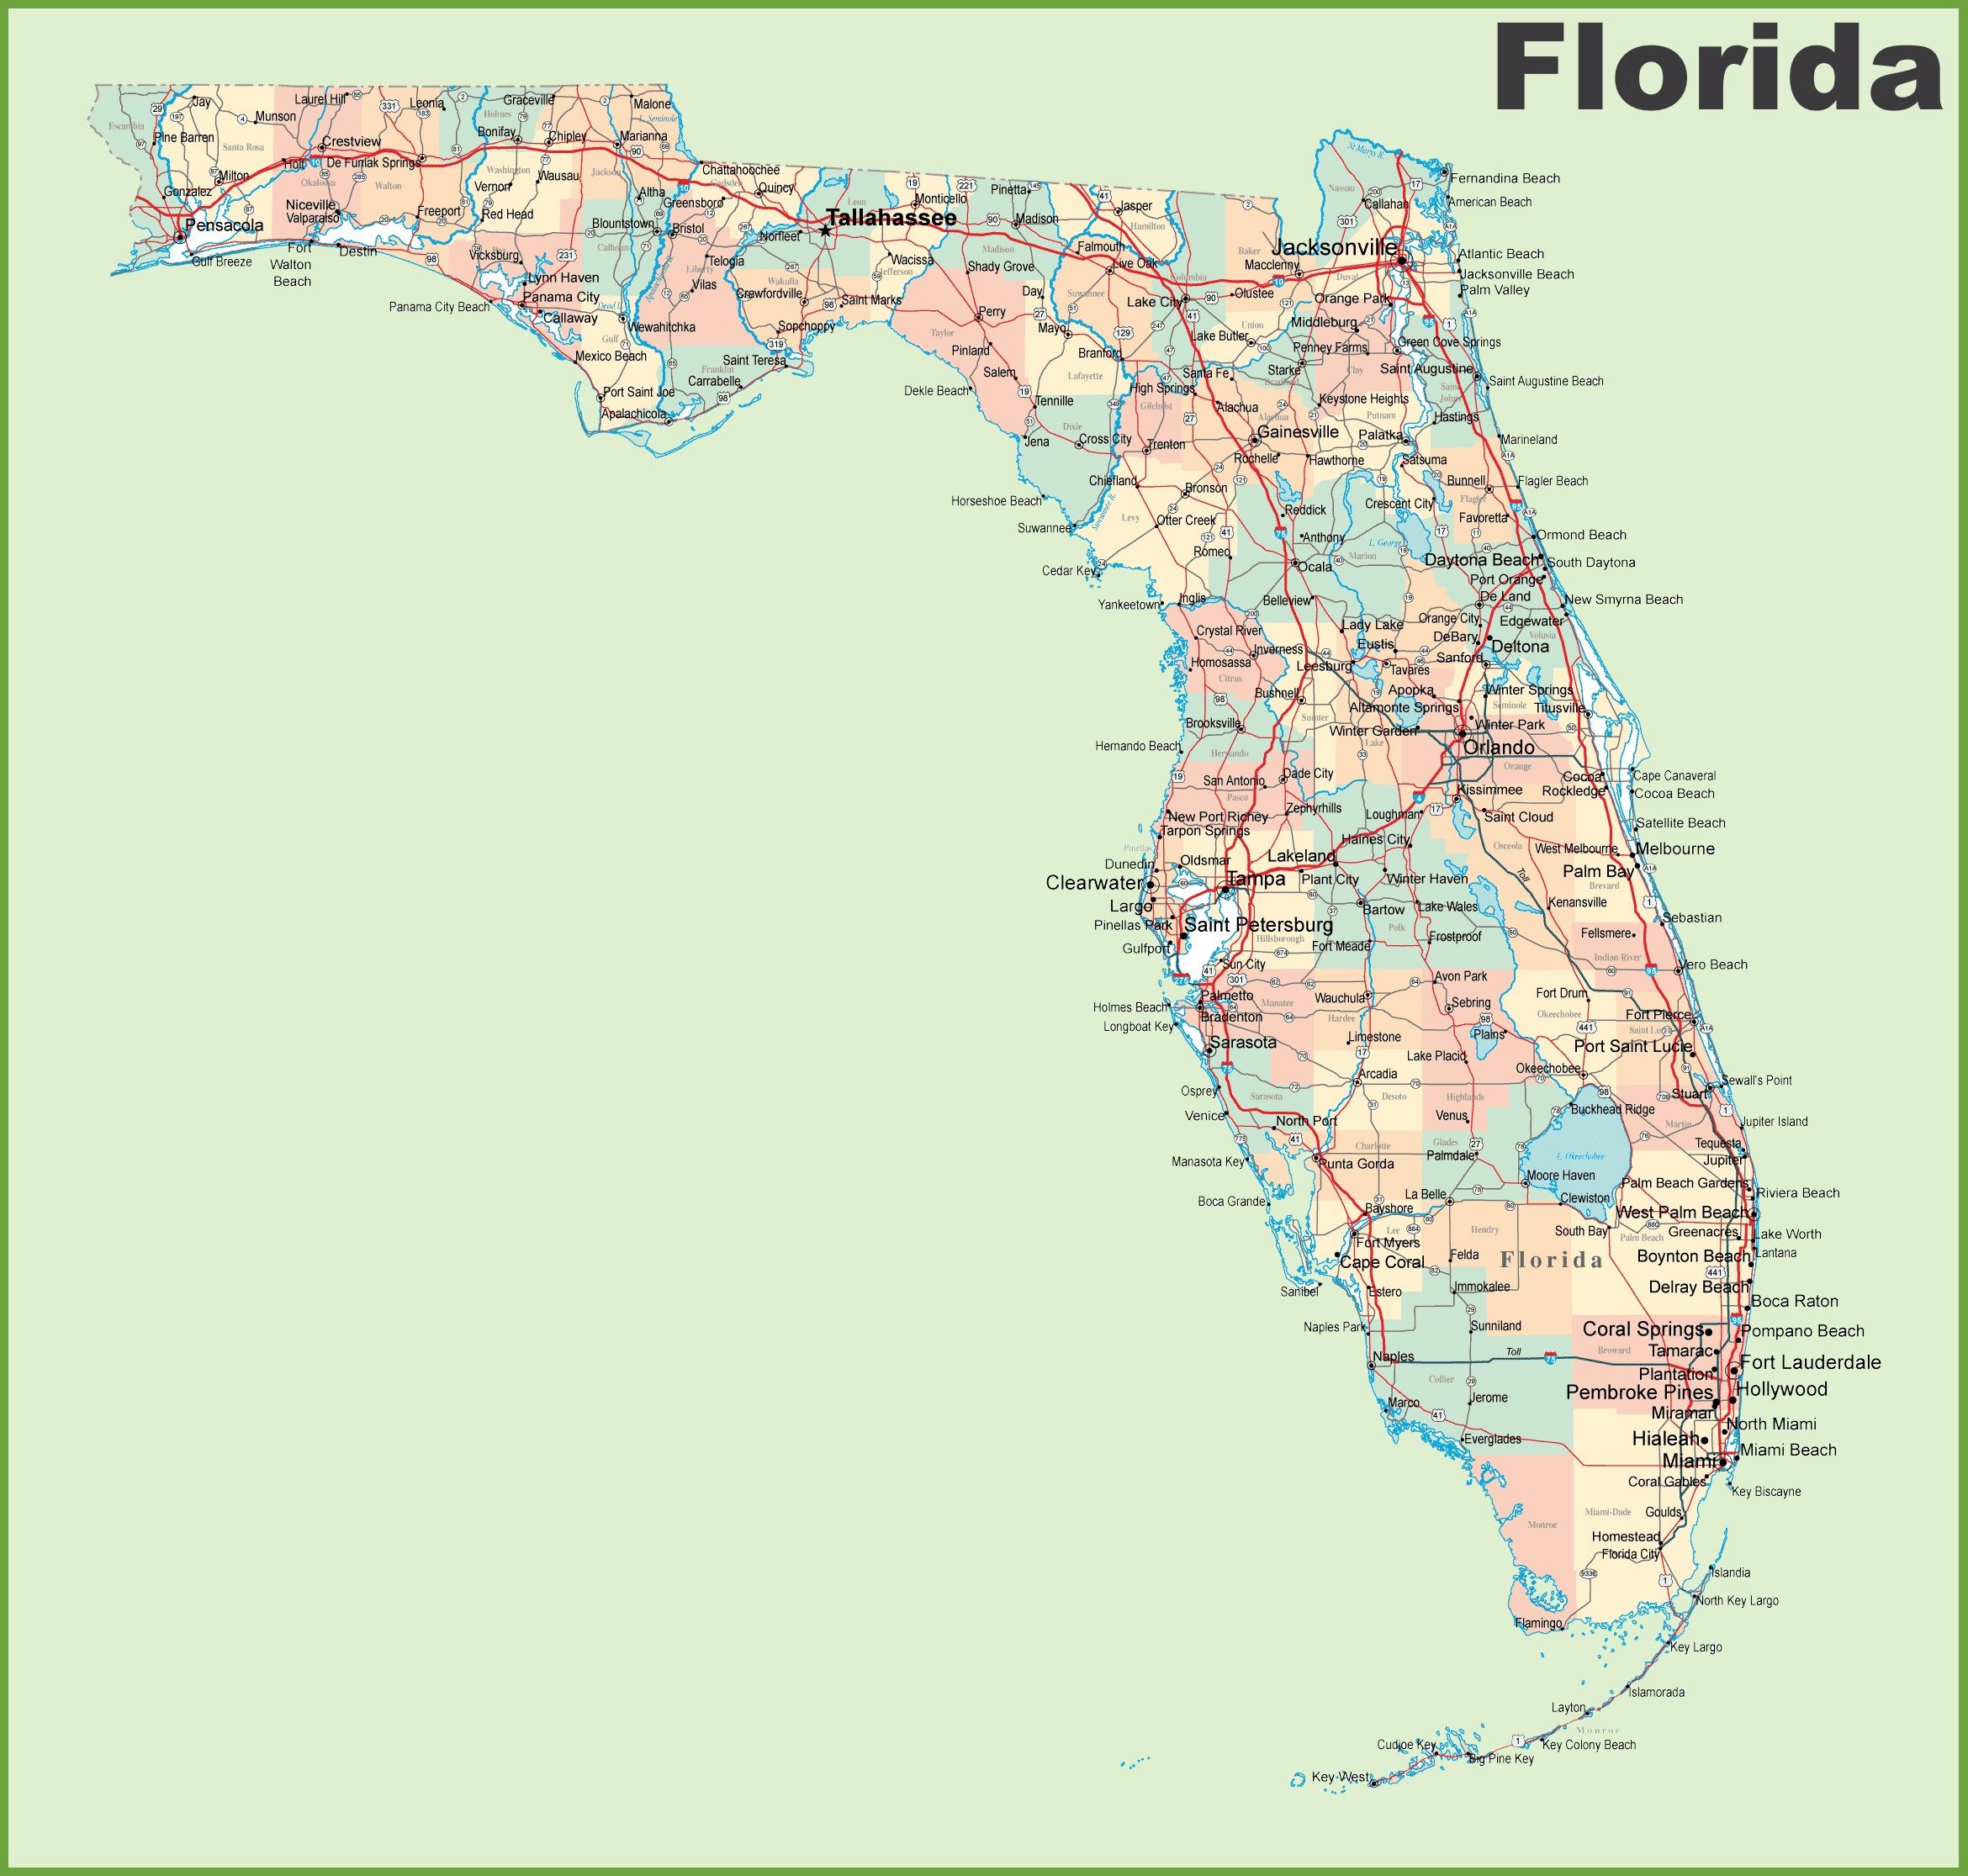 Stadtplan von Florida | Detaillierte gedruckte Karten von Florida, USA